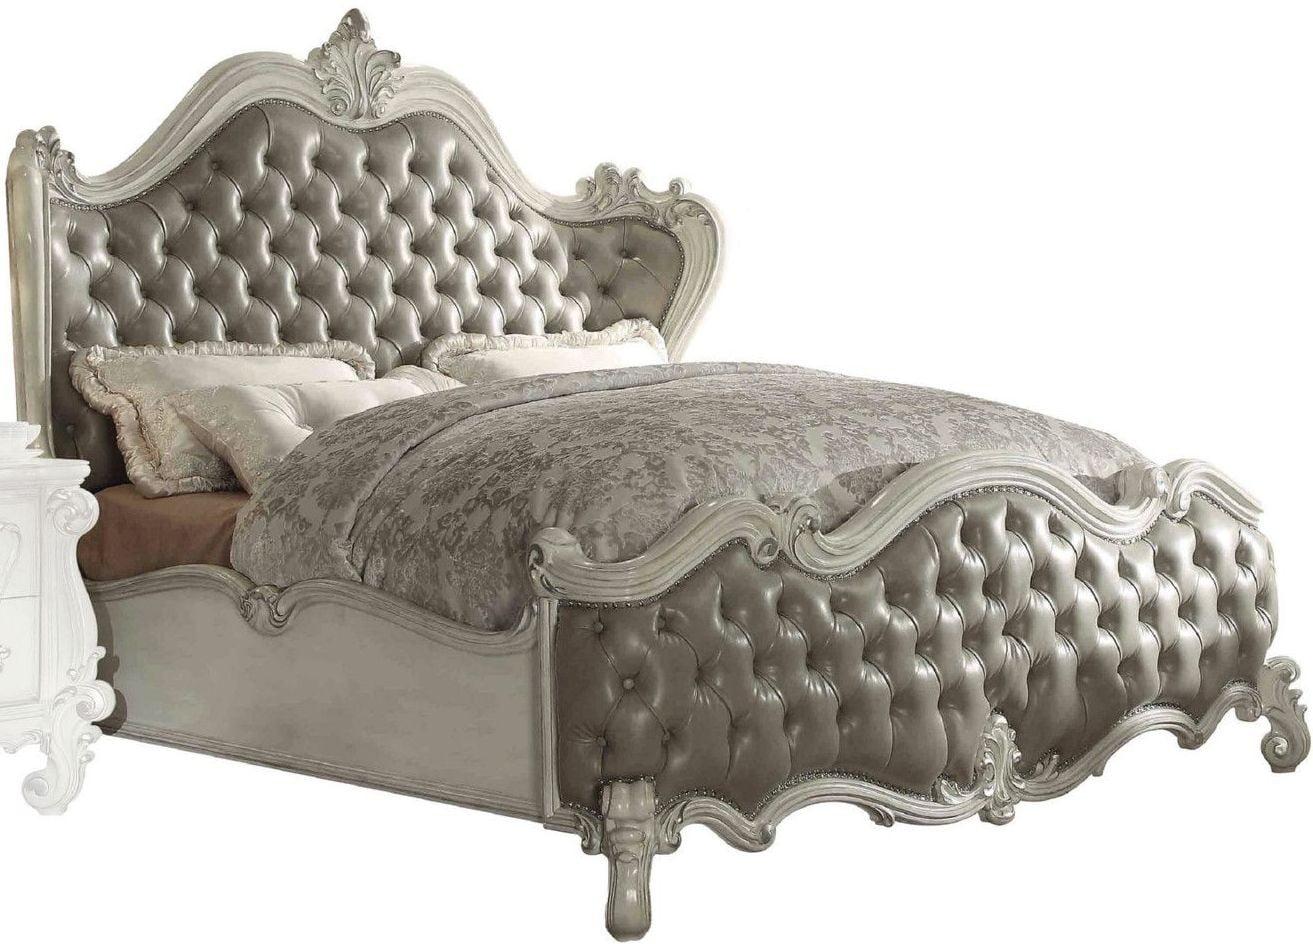 

    
Superstar Upholstered Standard Queen Bedroom Set 5 Pcs
